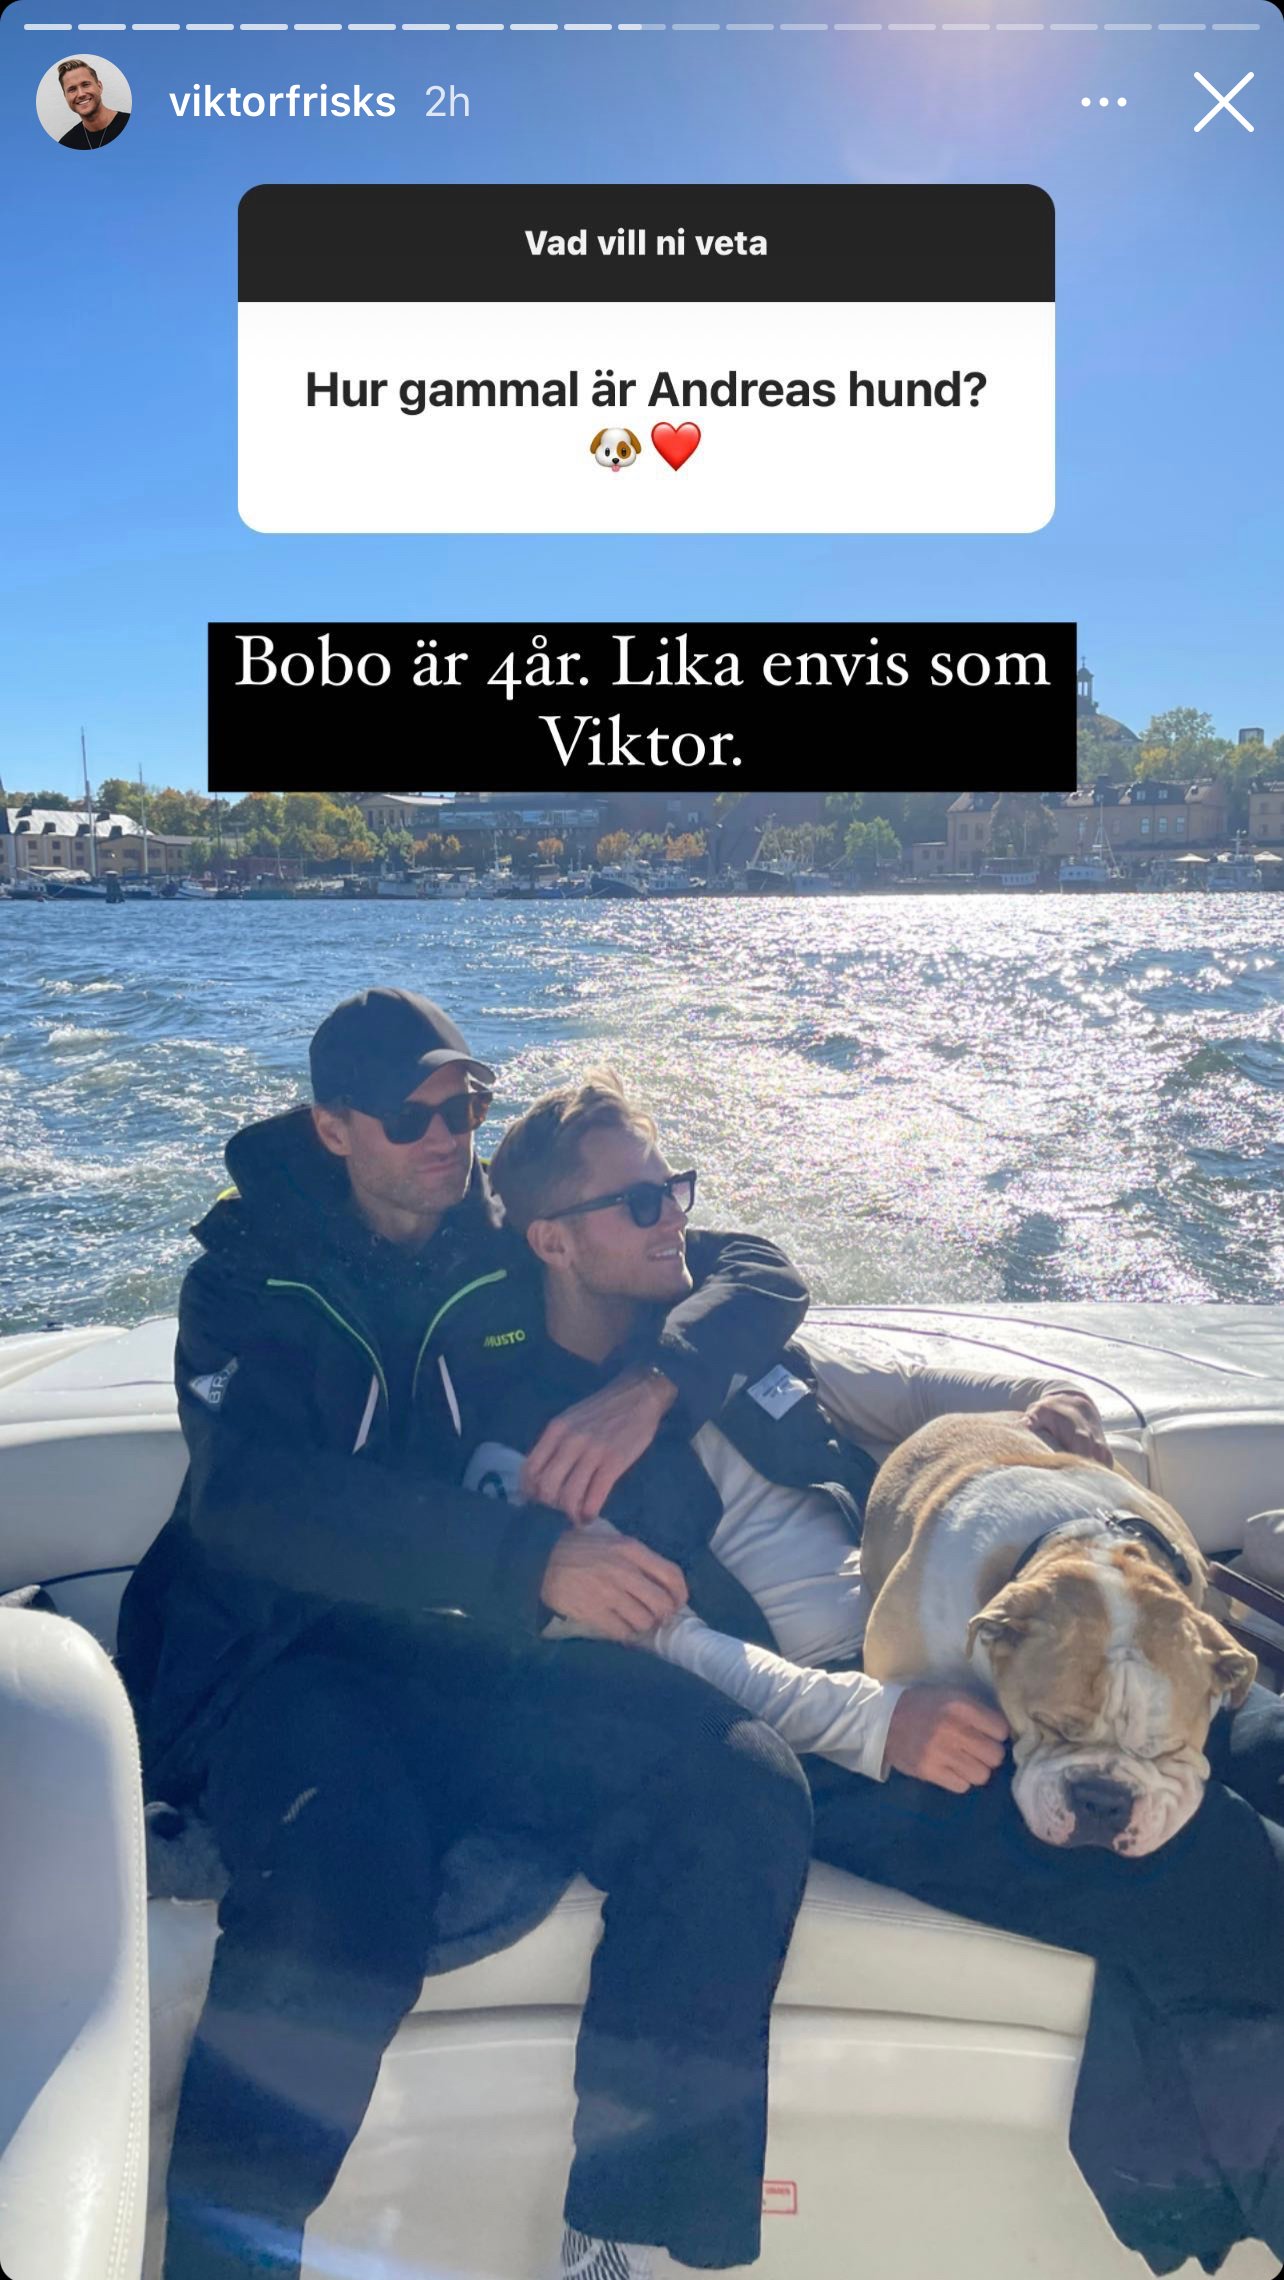 Hur gammal är Andreas hund? Svar: Bobo är 4 år. Lika envis som Viktor.